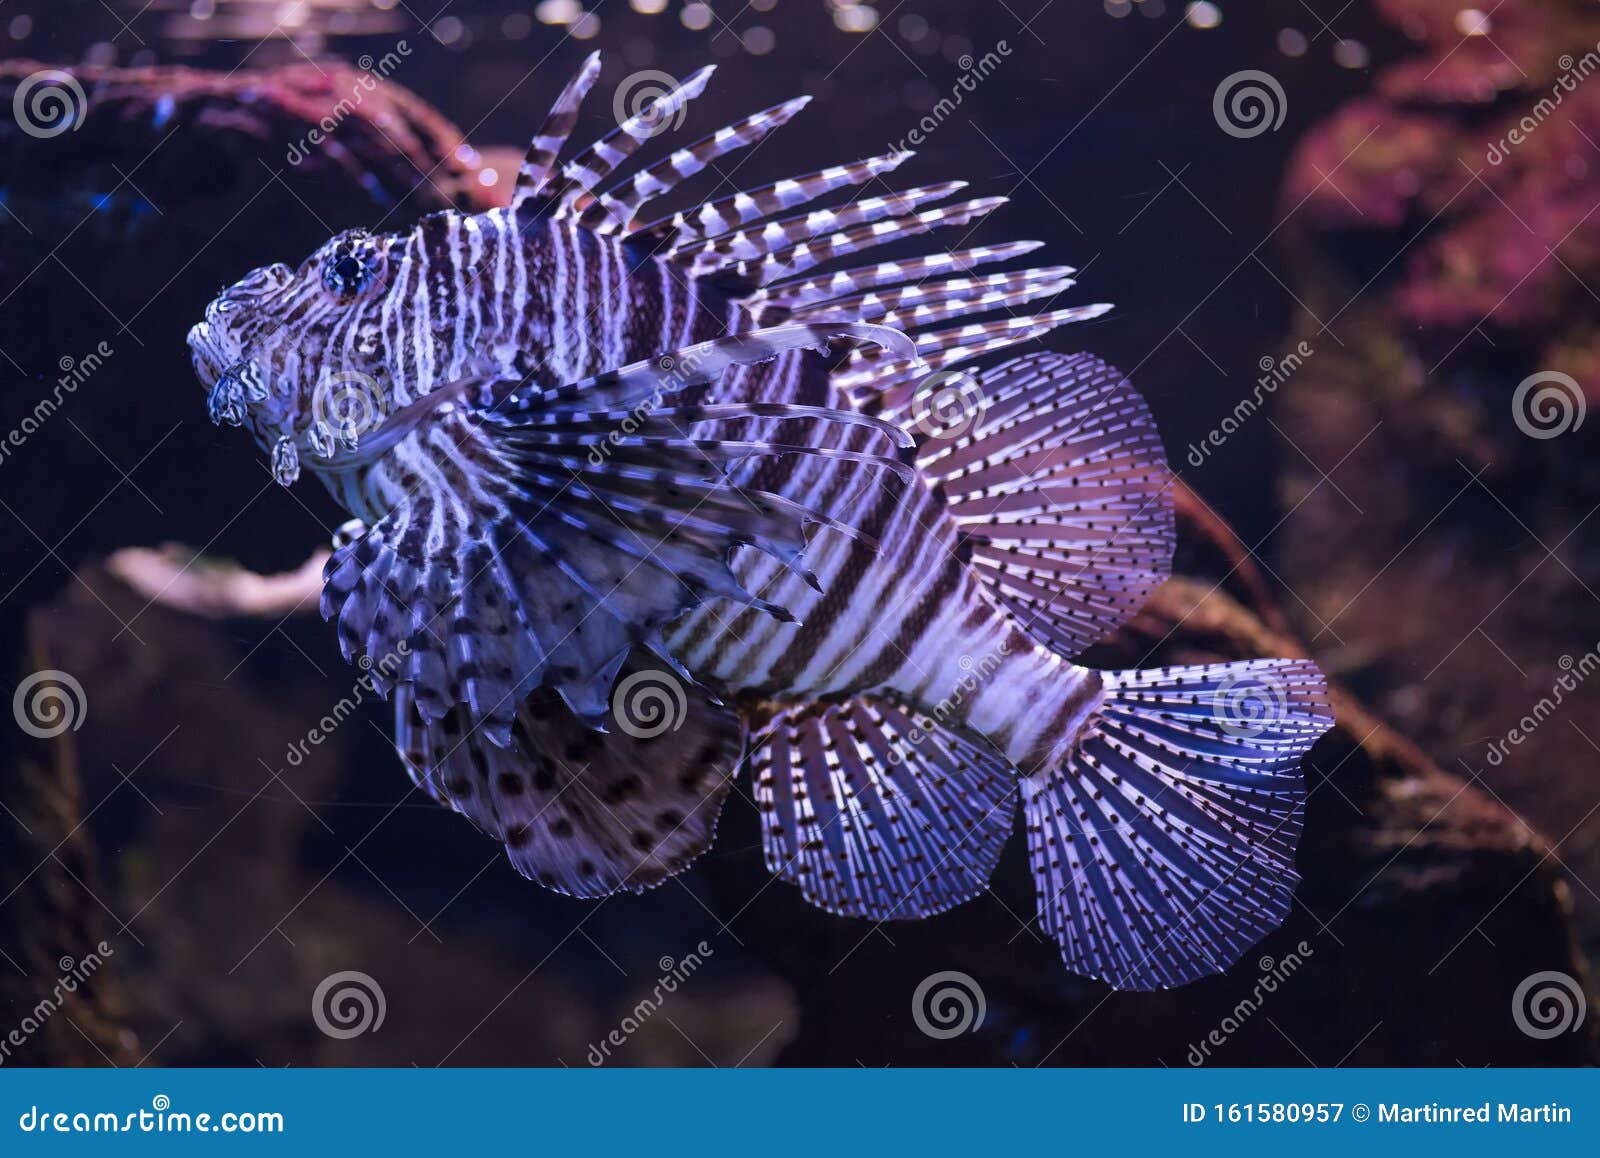 Рыба Скорпион Фото